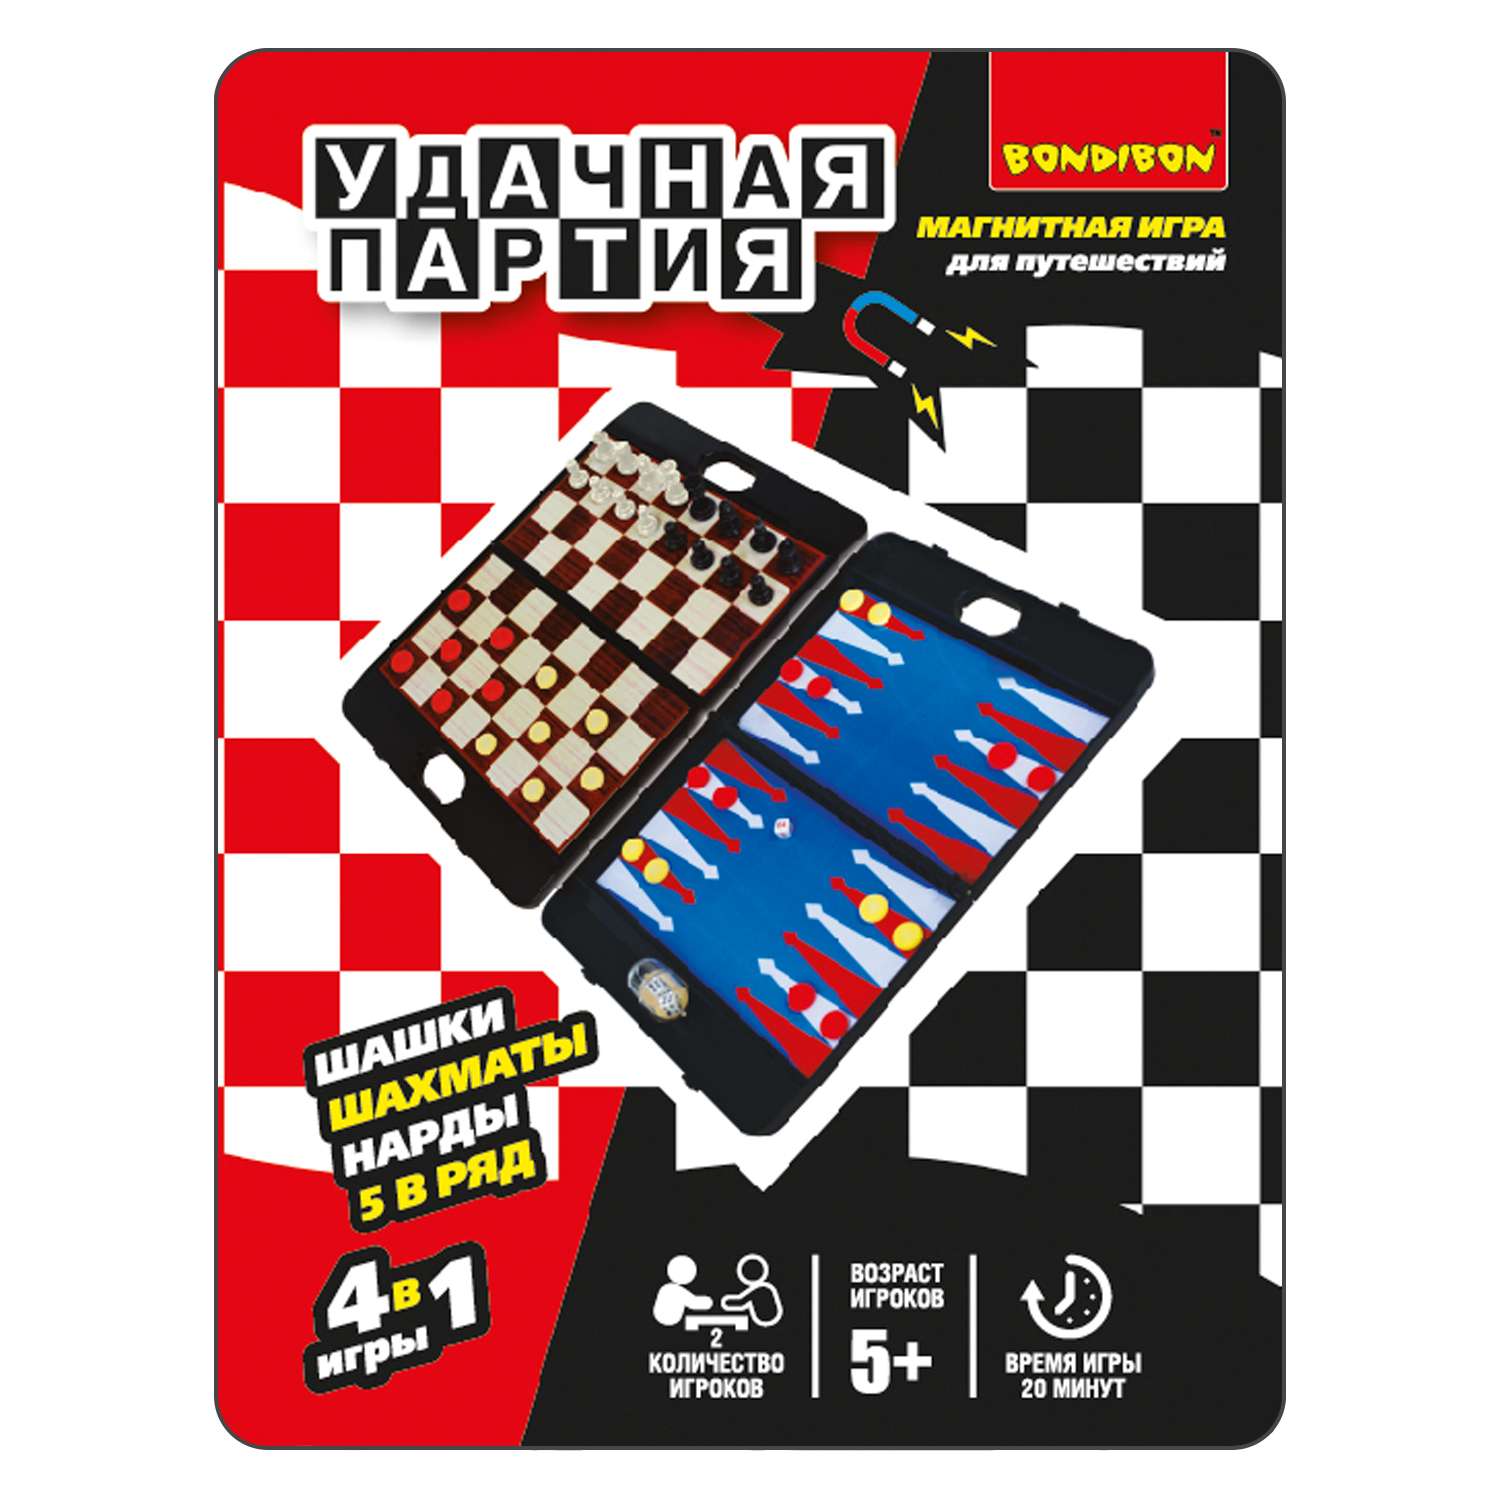 Настольная развивающая игра BONDIBON 4 в 1 Шахматы шашки нарды 5 в ряд серия Удачная партия - фото 2